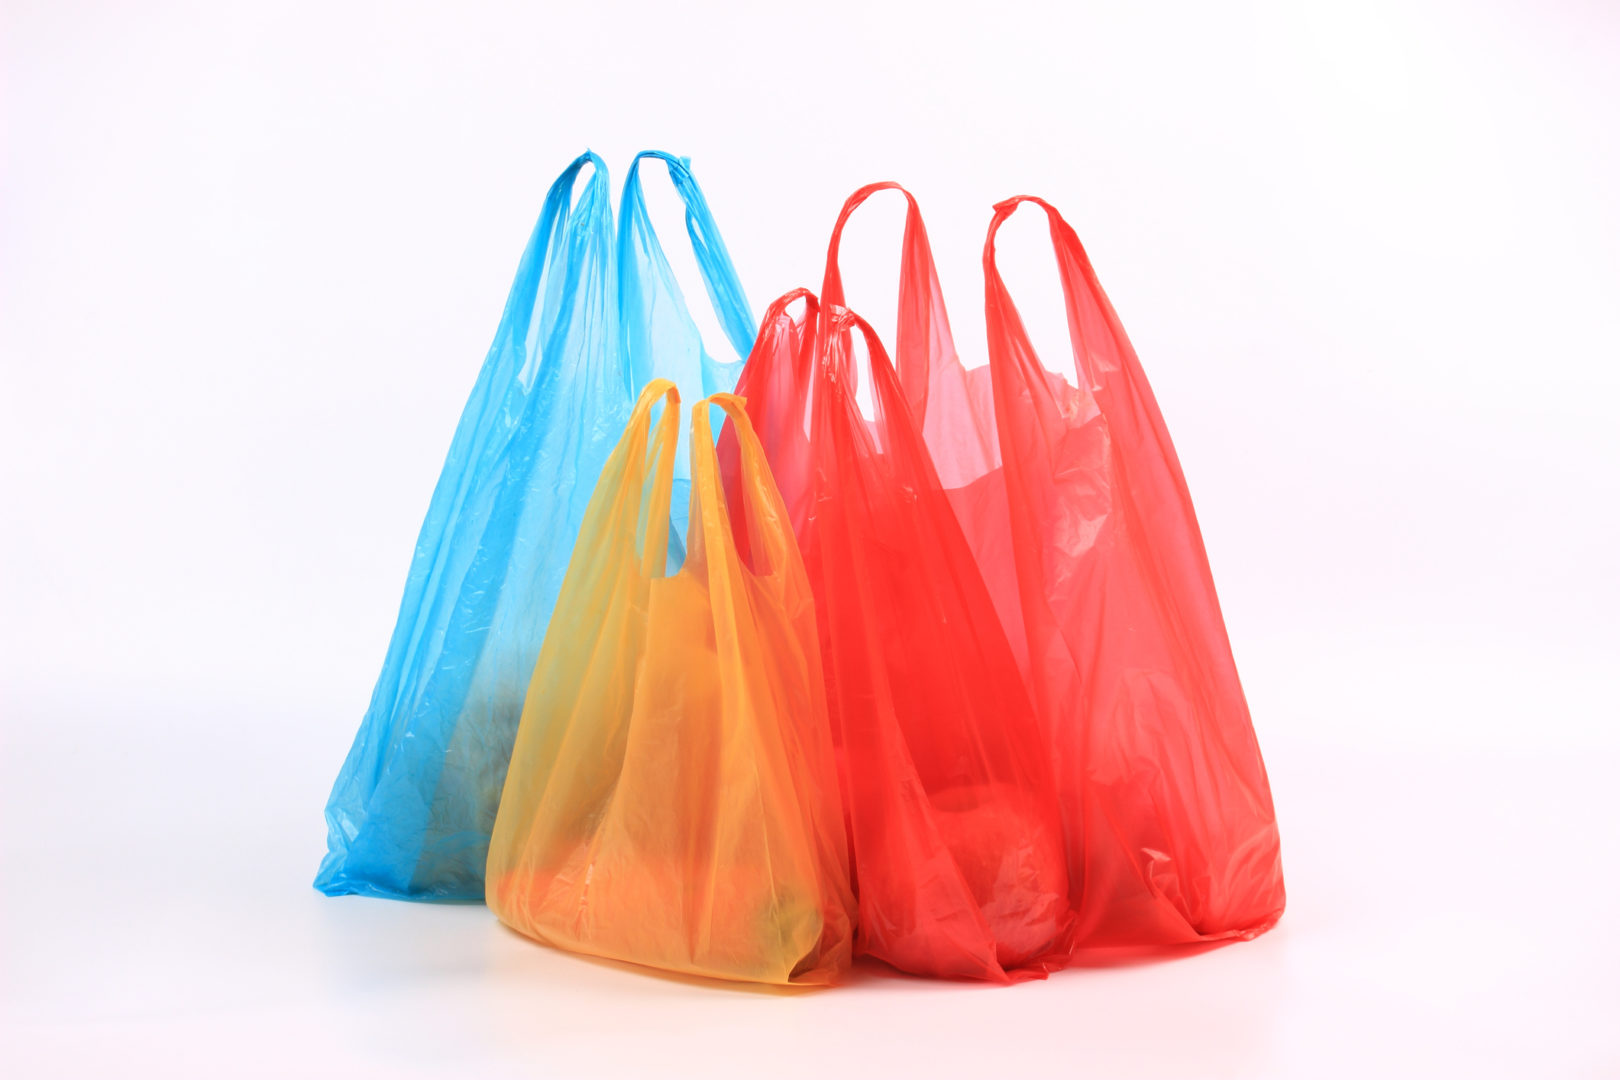 Bolsas de plástico: su reducción es clave- Fundación Aquae